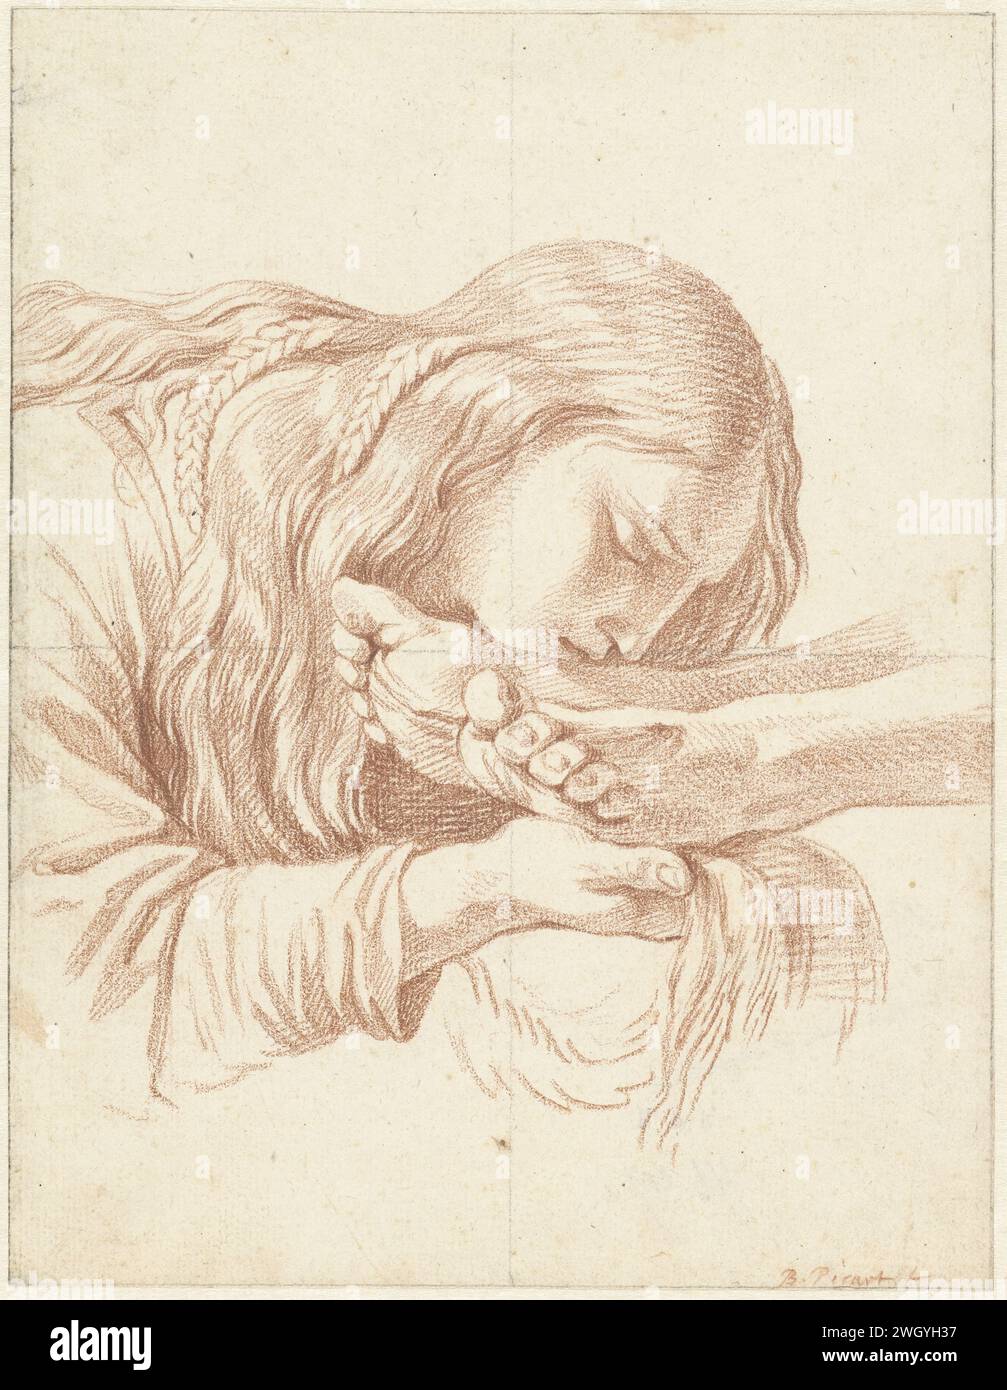 Maria Magdalena bacia i piedi di Cristo, Bernard Picart, dopo Eustache Lesueur, 1683 - 1733 carta da disegno. Gesso le sante donne ungono il corpo di Cristo Foto Stock